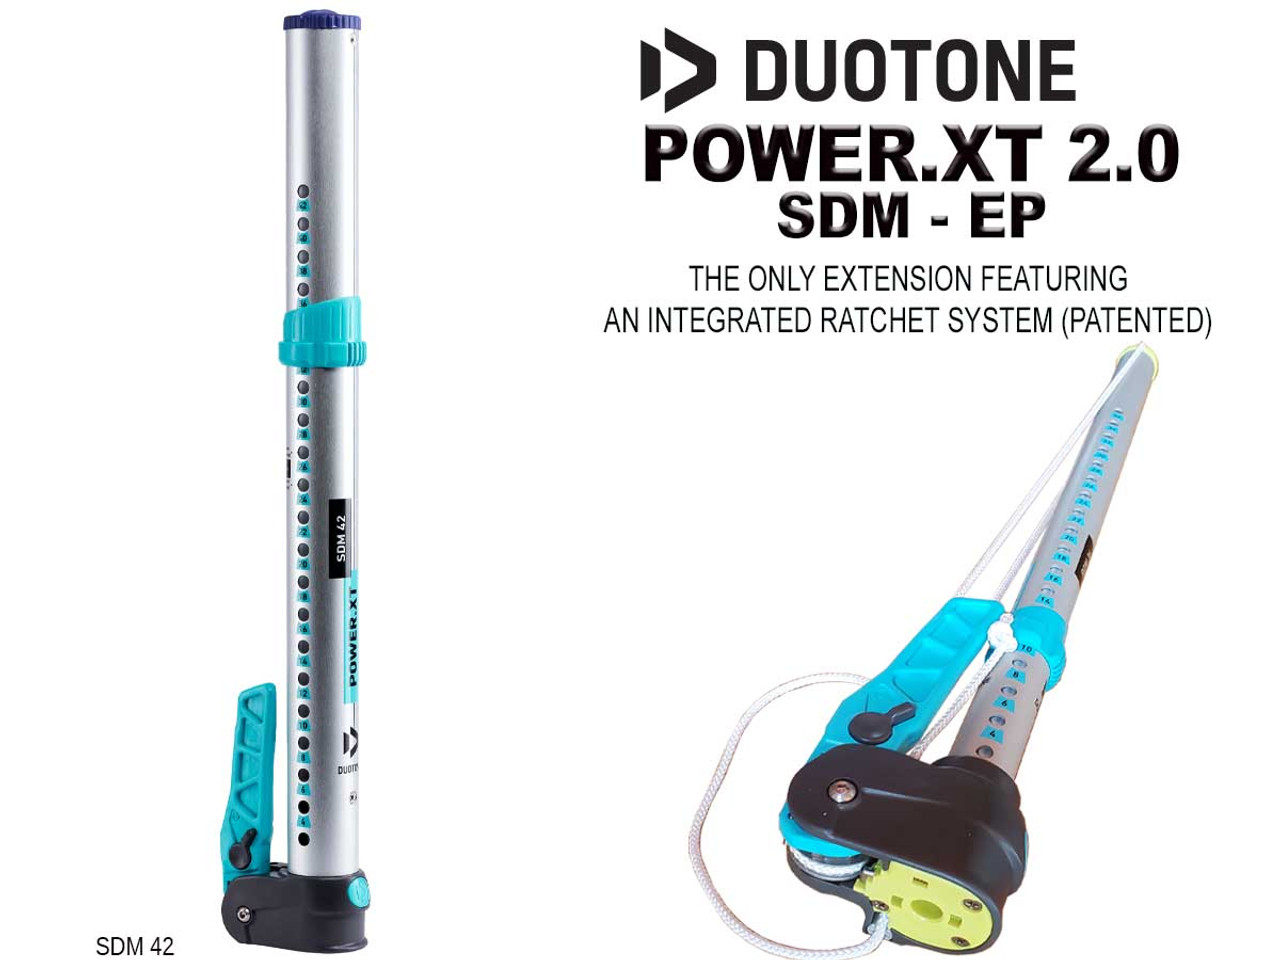 Duotone Power XT 2.0 SDM Extension